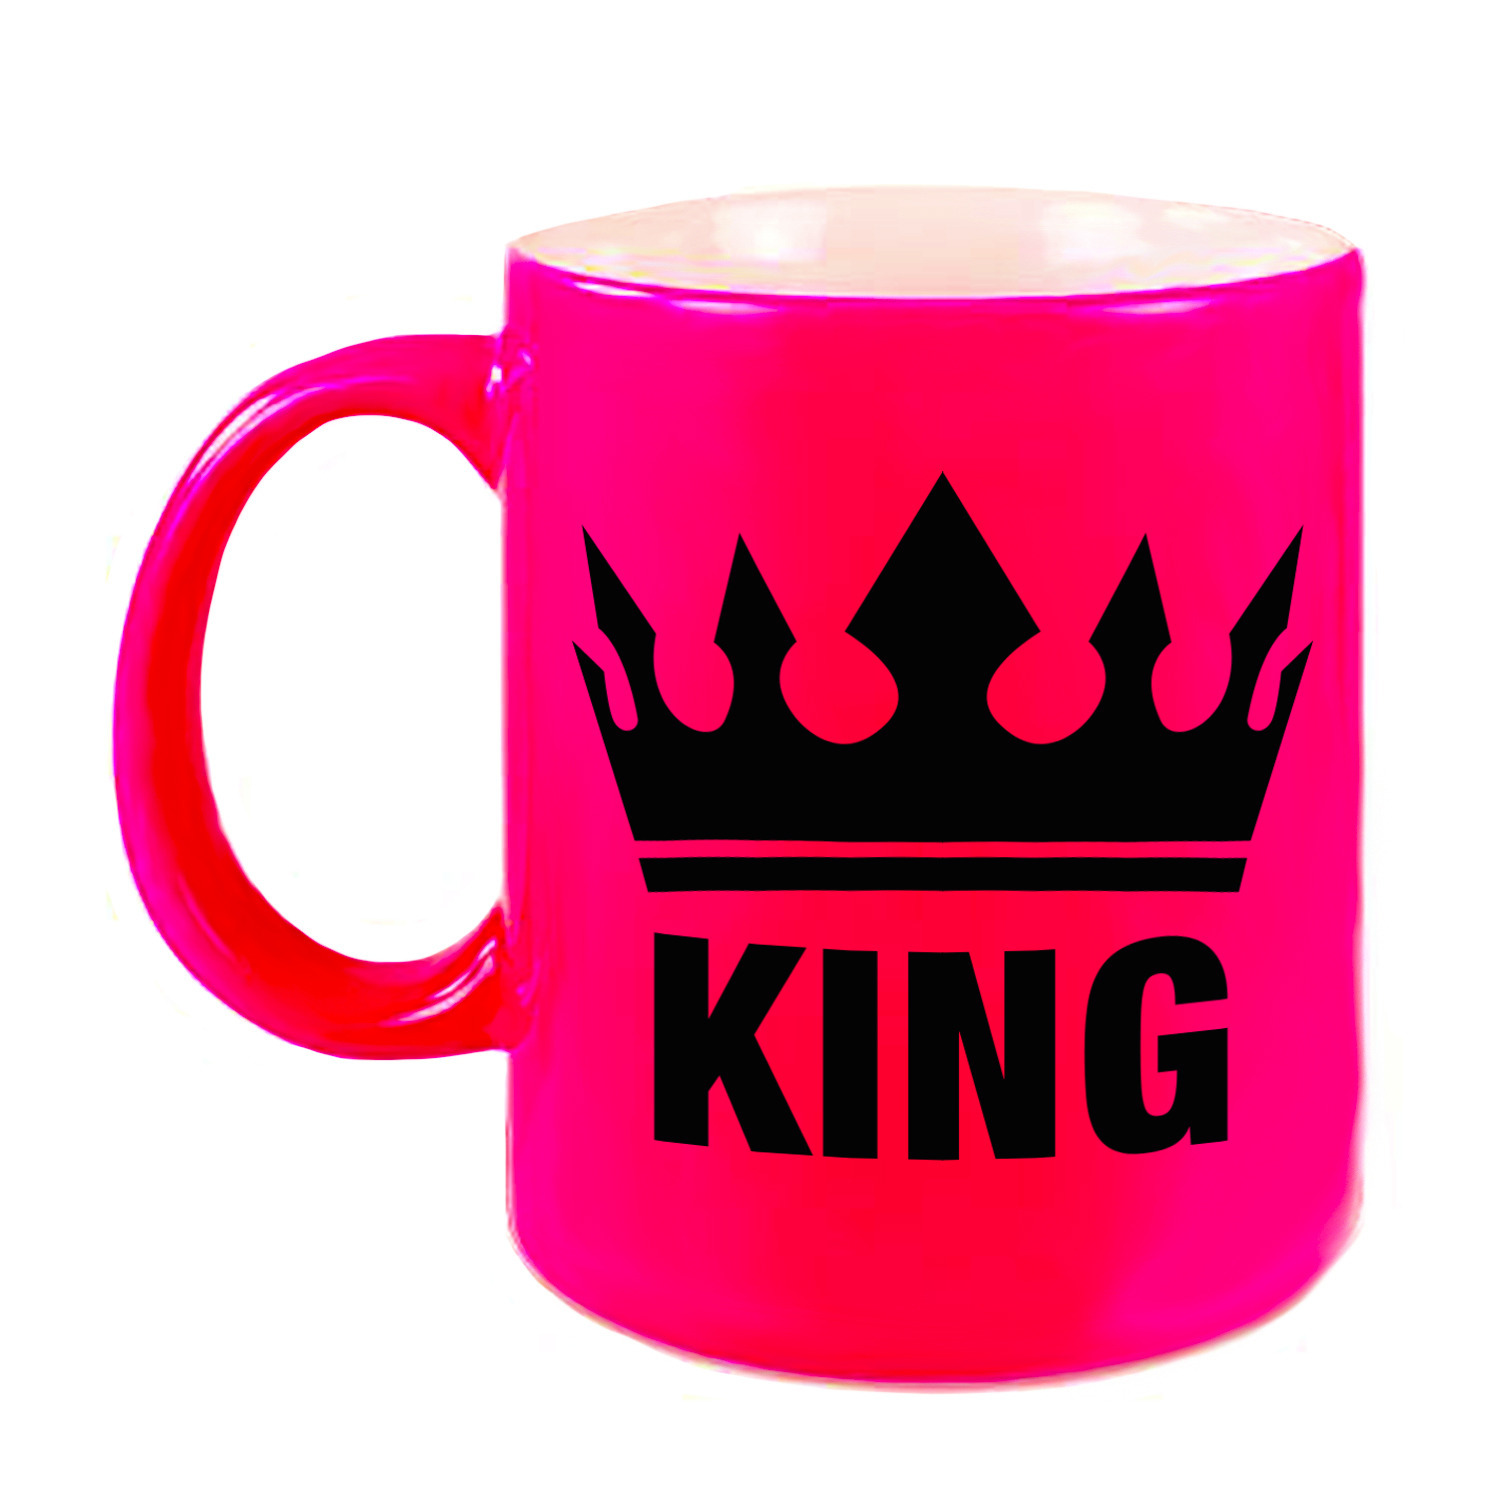 Cadeau King mok- beker fluor neon roze met zwarte bedrukking 300 ml